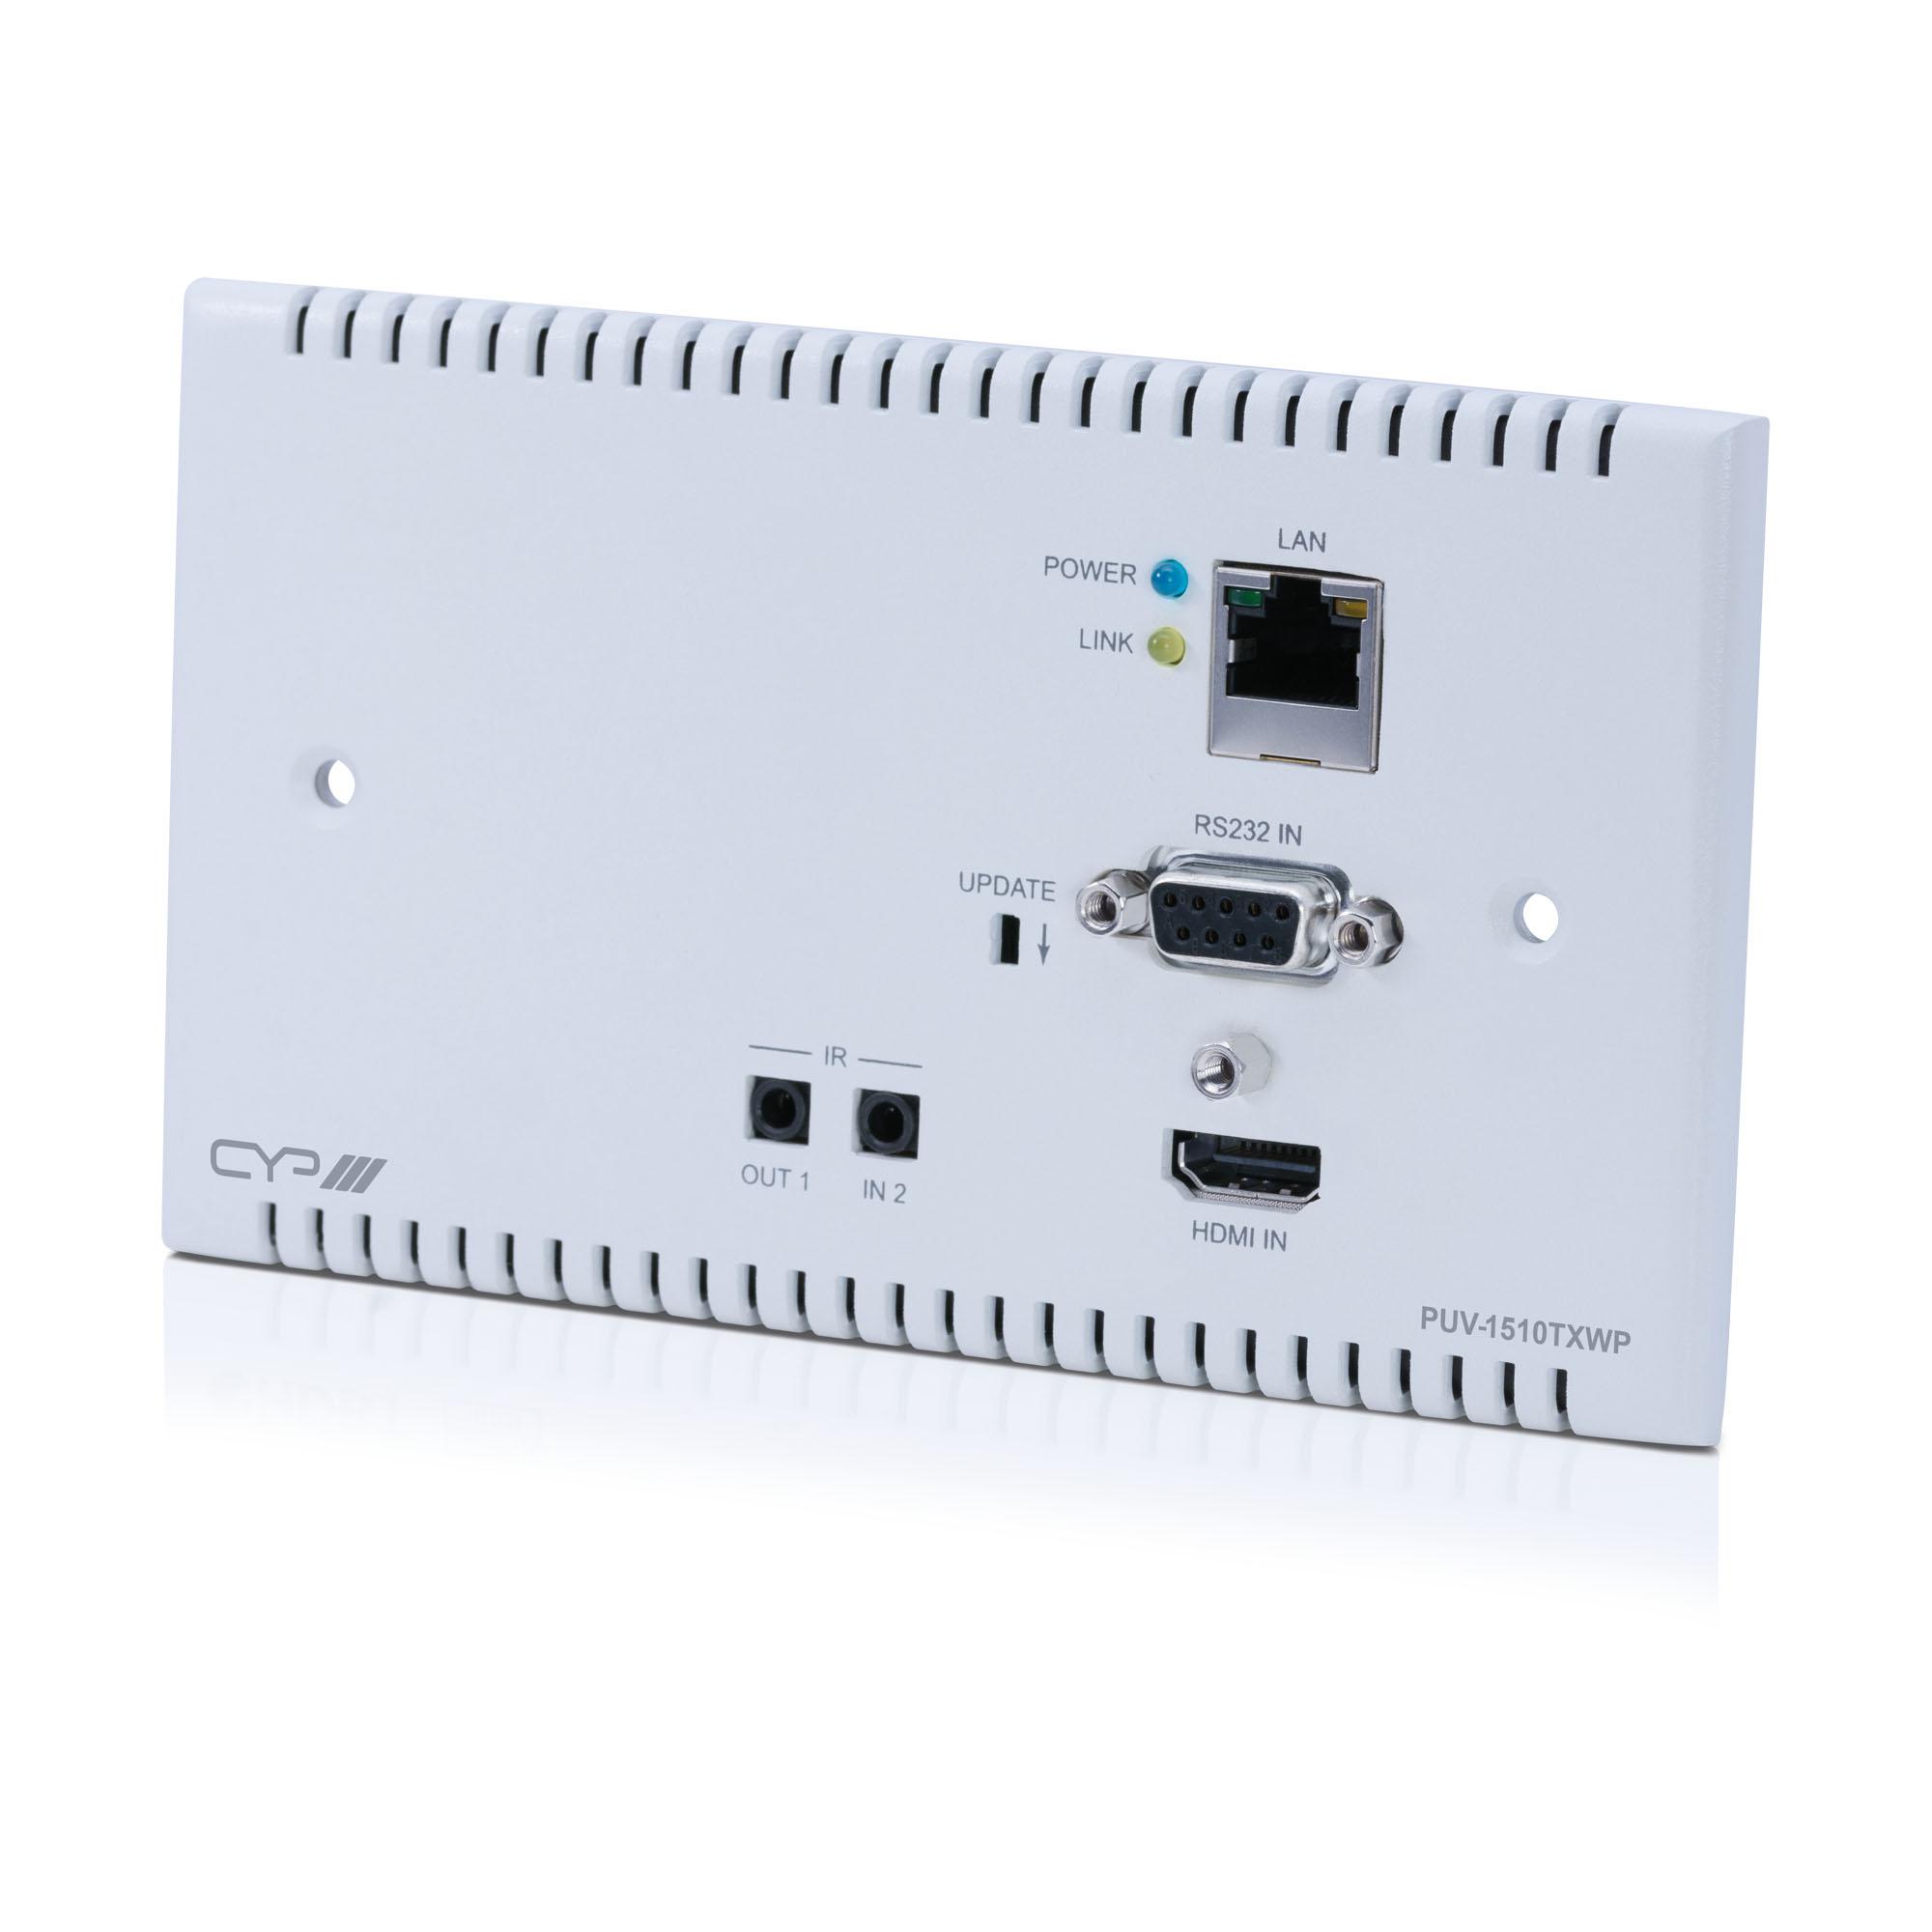 PUV-1510TXWP 100m HDBaseT™ UKWallplate Transmitter (4K, HDCP2.2, PoH, LAN) - Coming Soon